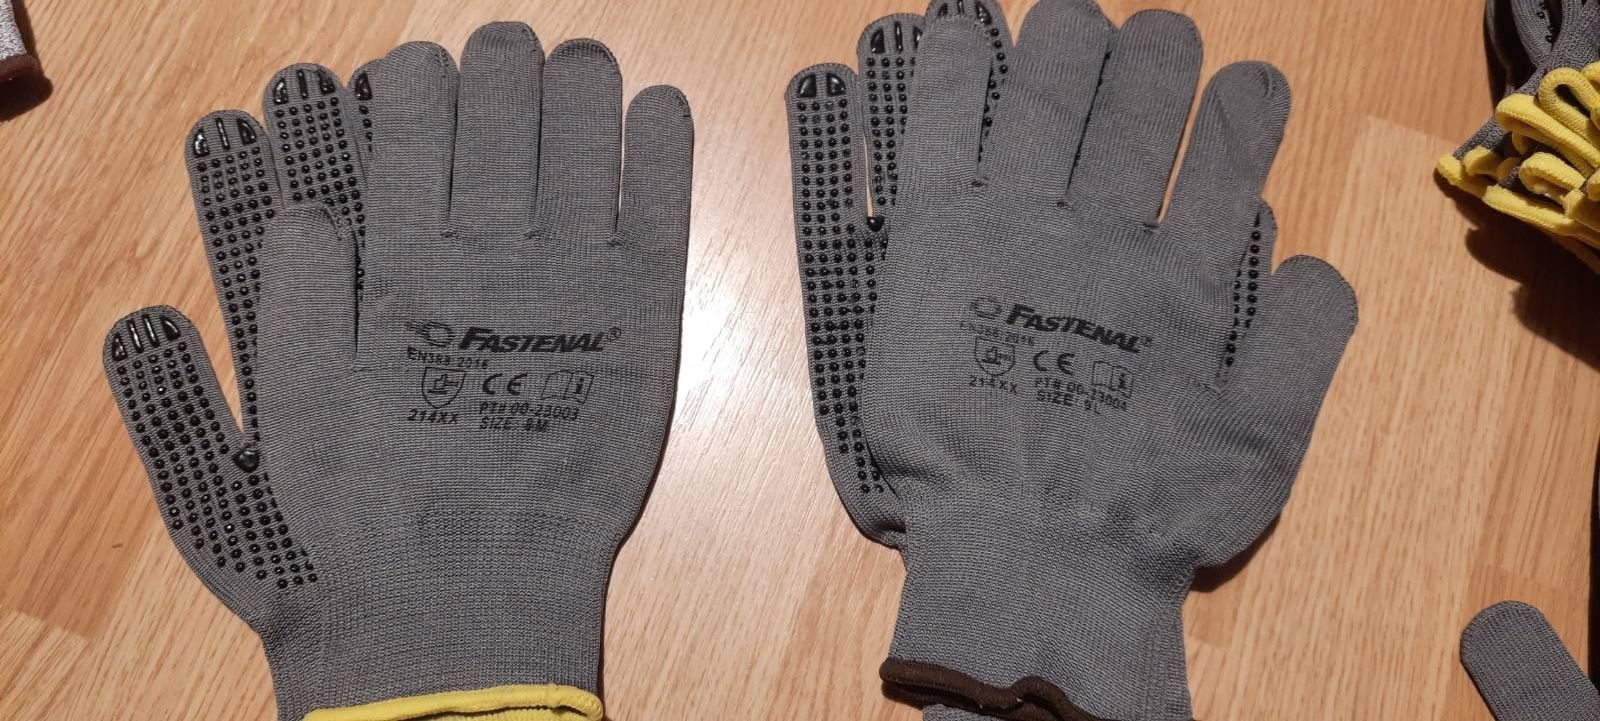 Продам рабочие перчатки Fаstenal